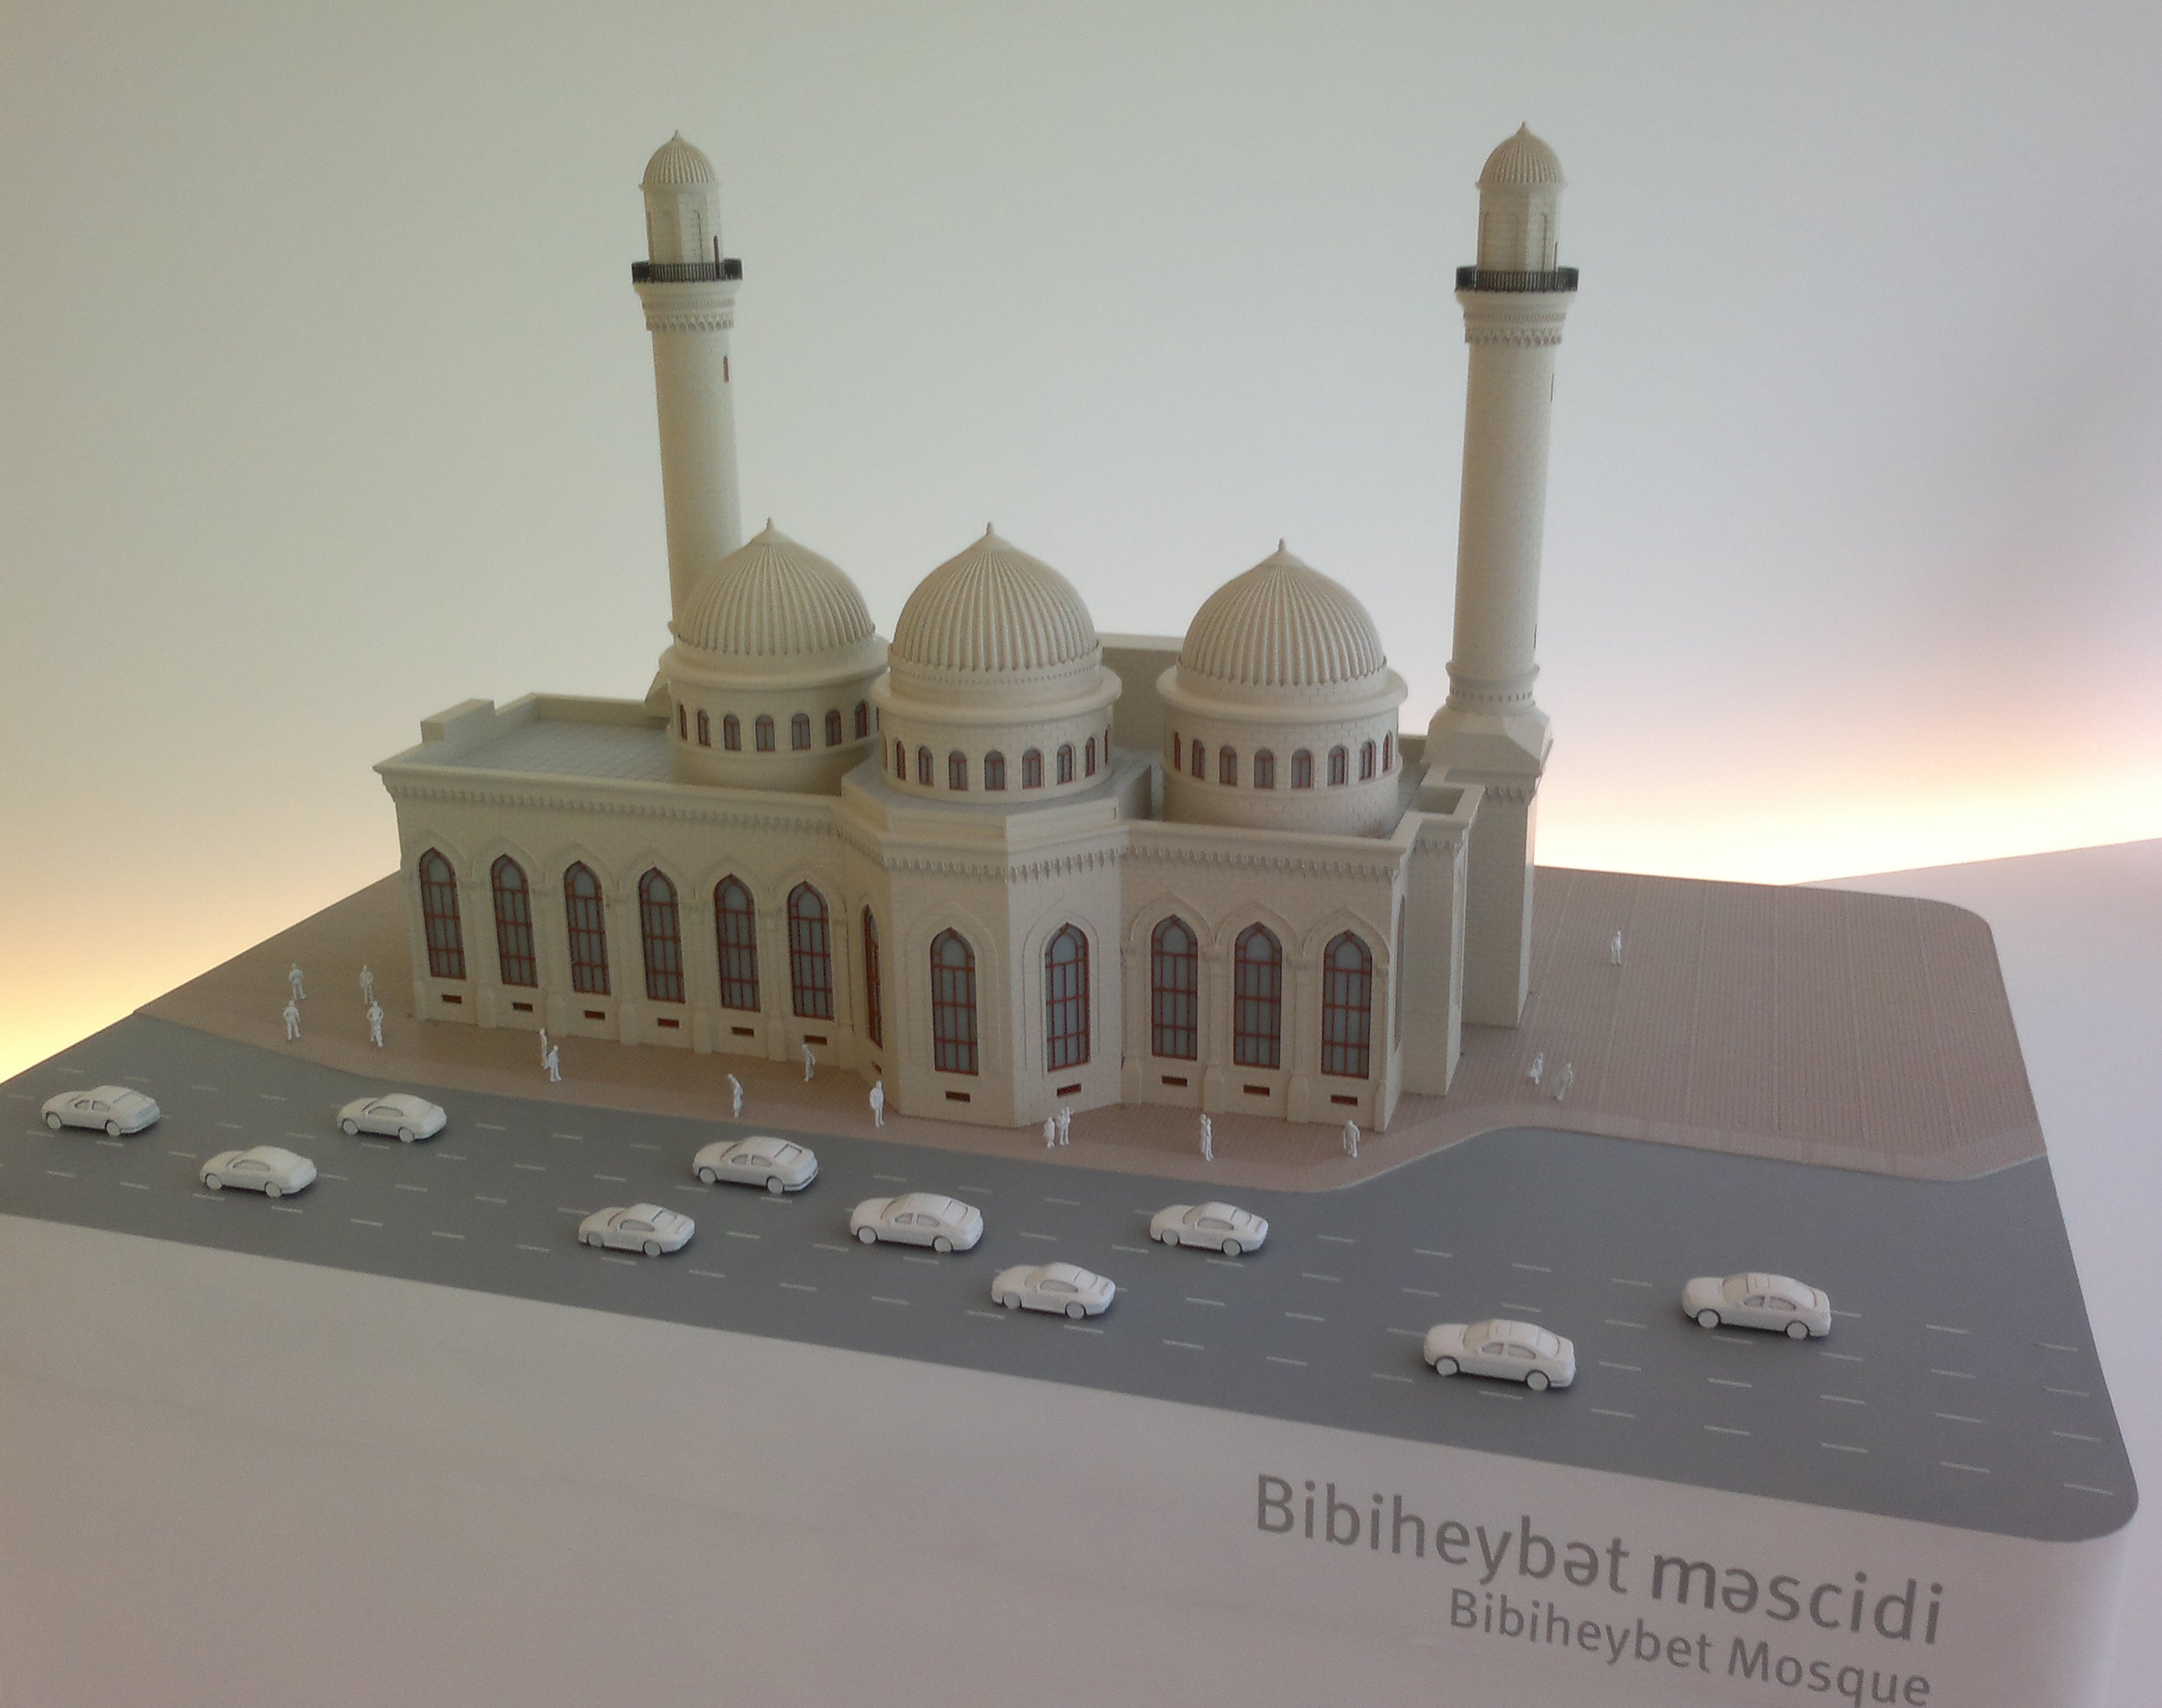 Макет мечети Биби-Эйбат.jpg